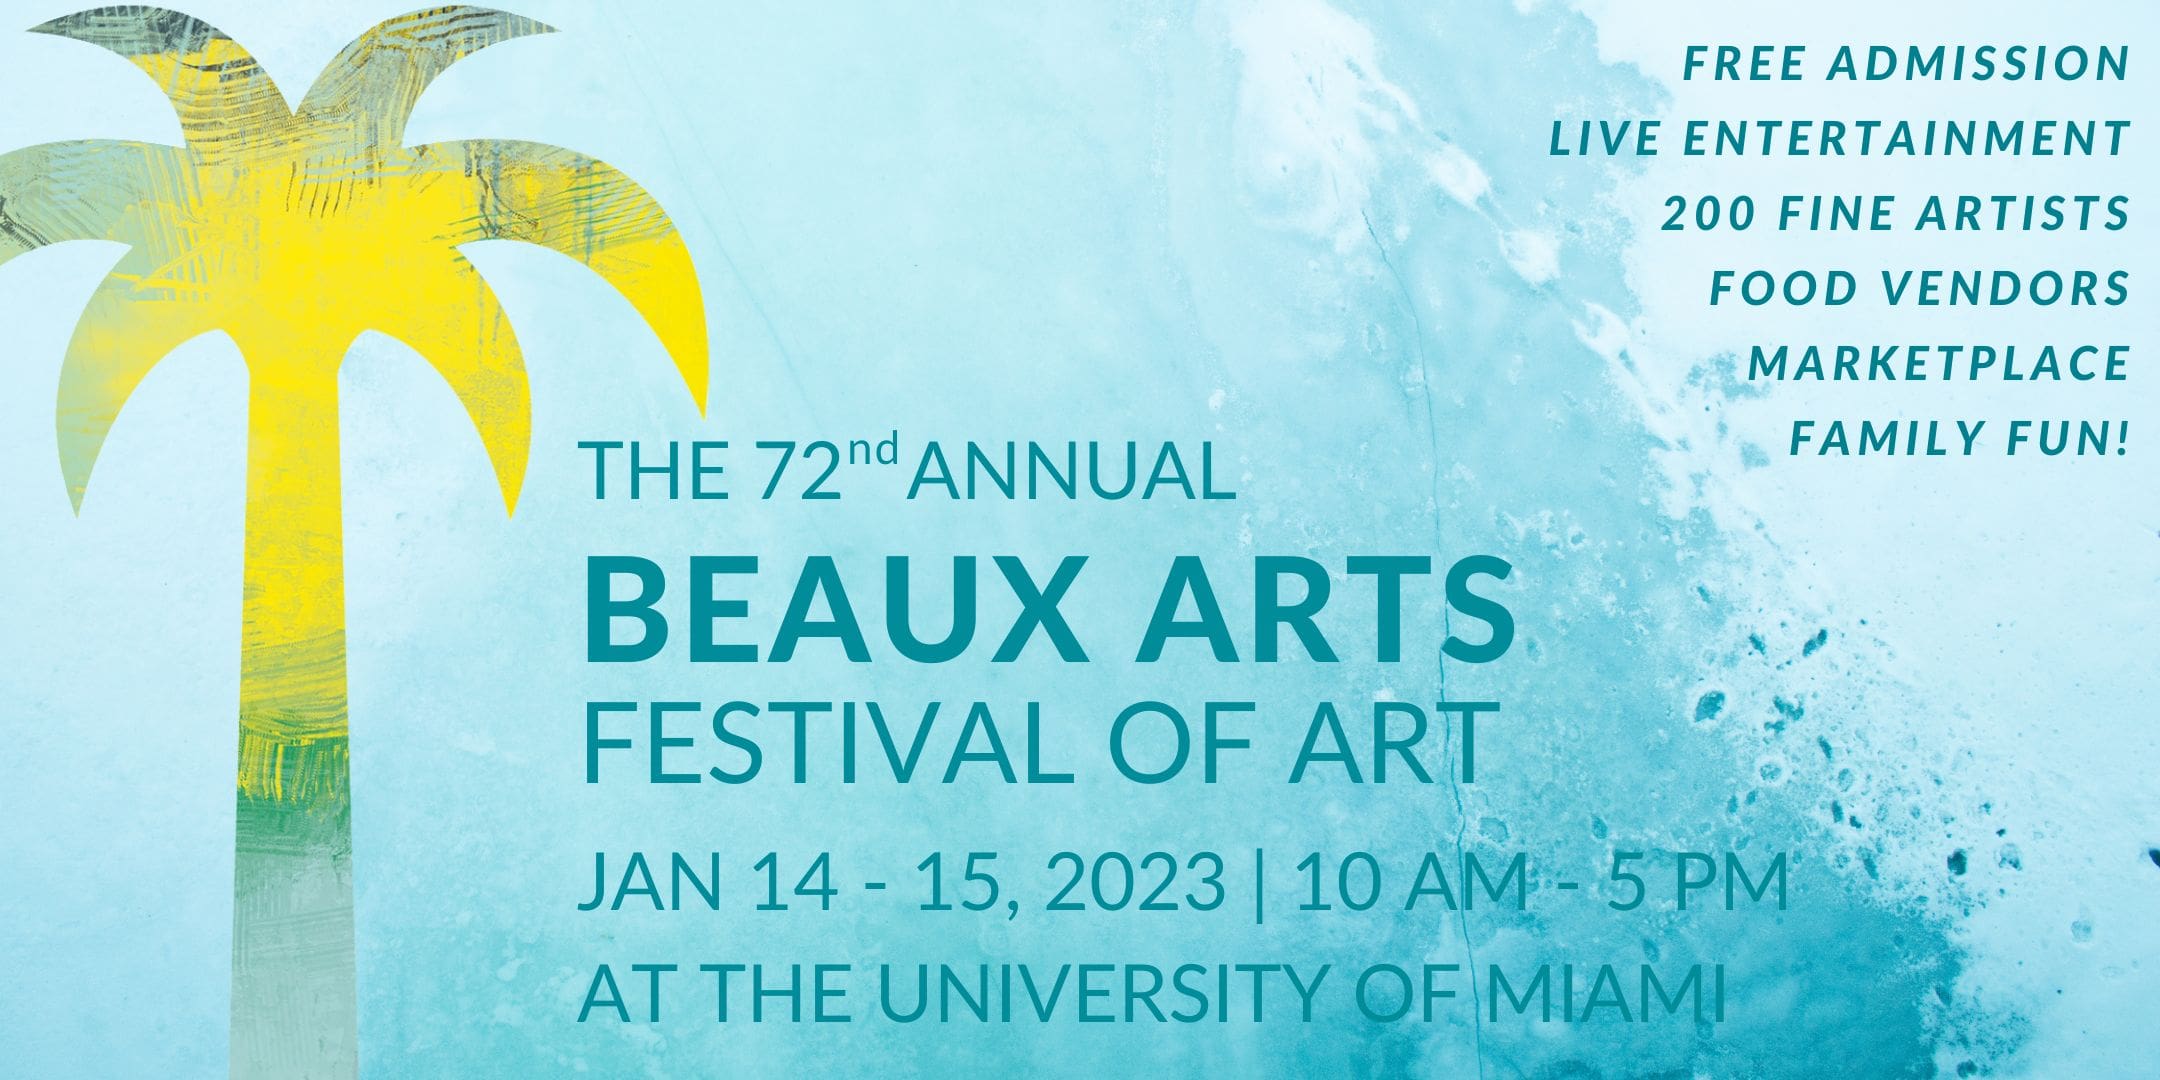 Beaux Arts Festival of Art Returns on January 1415, 2023